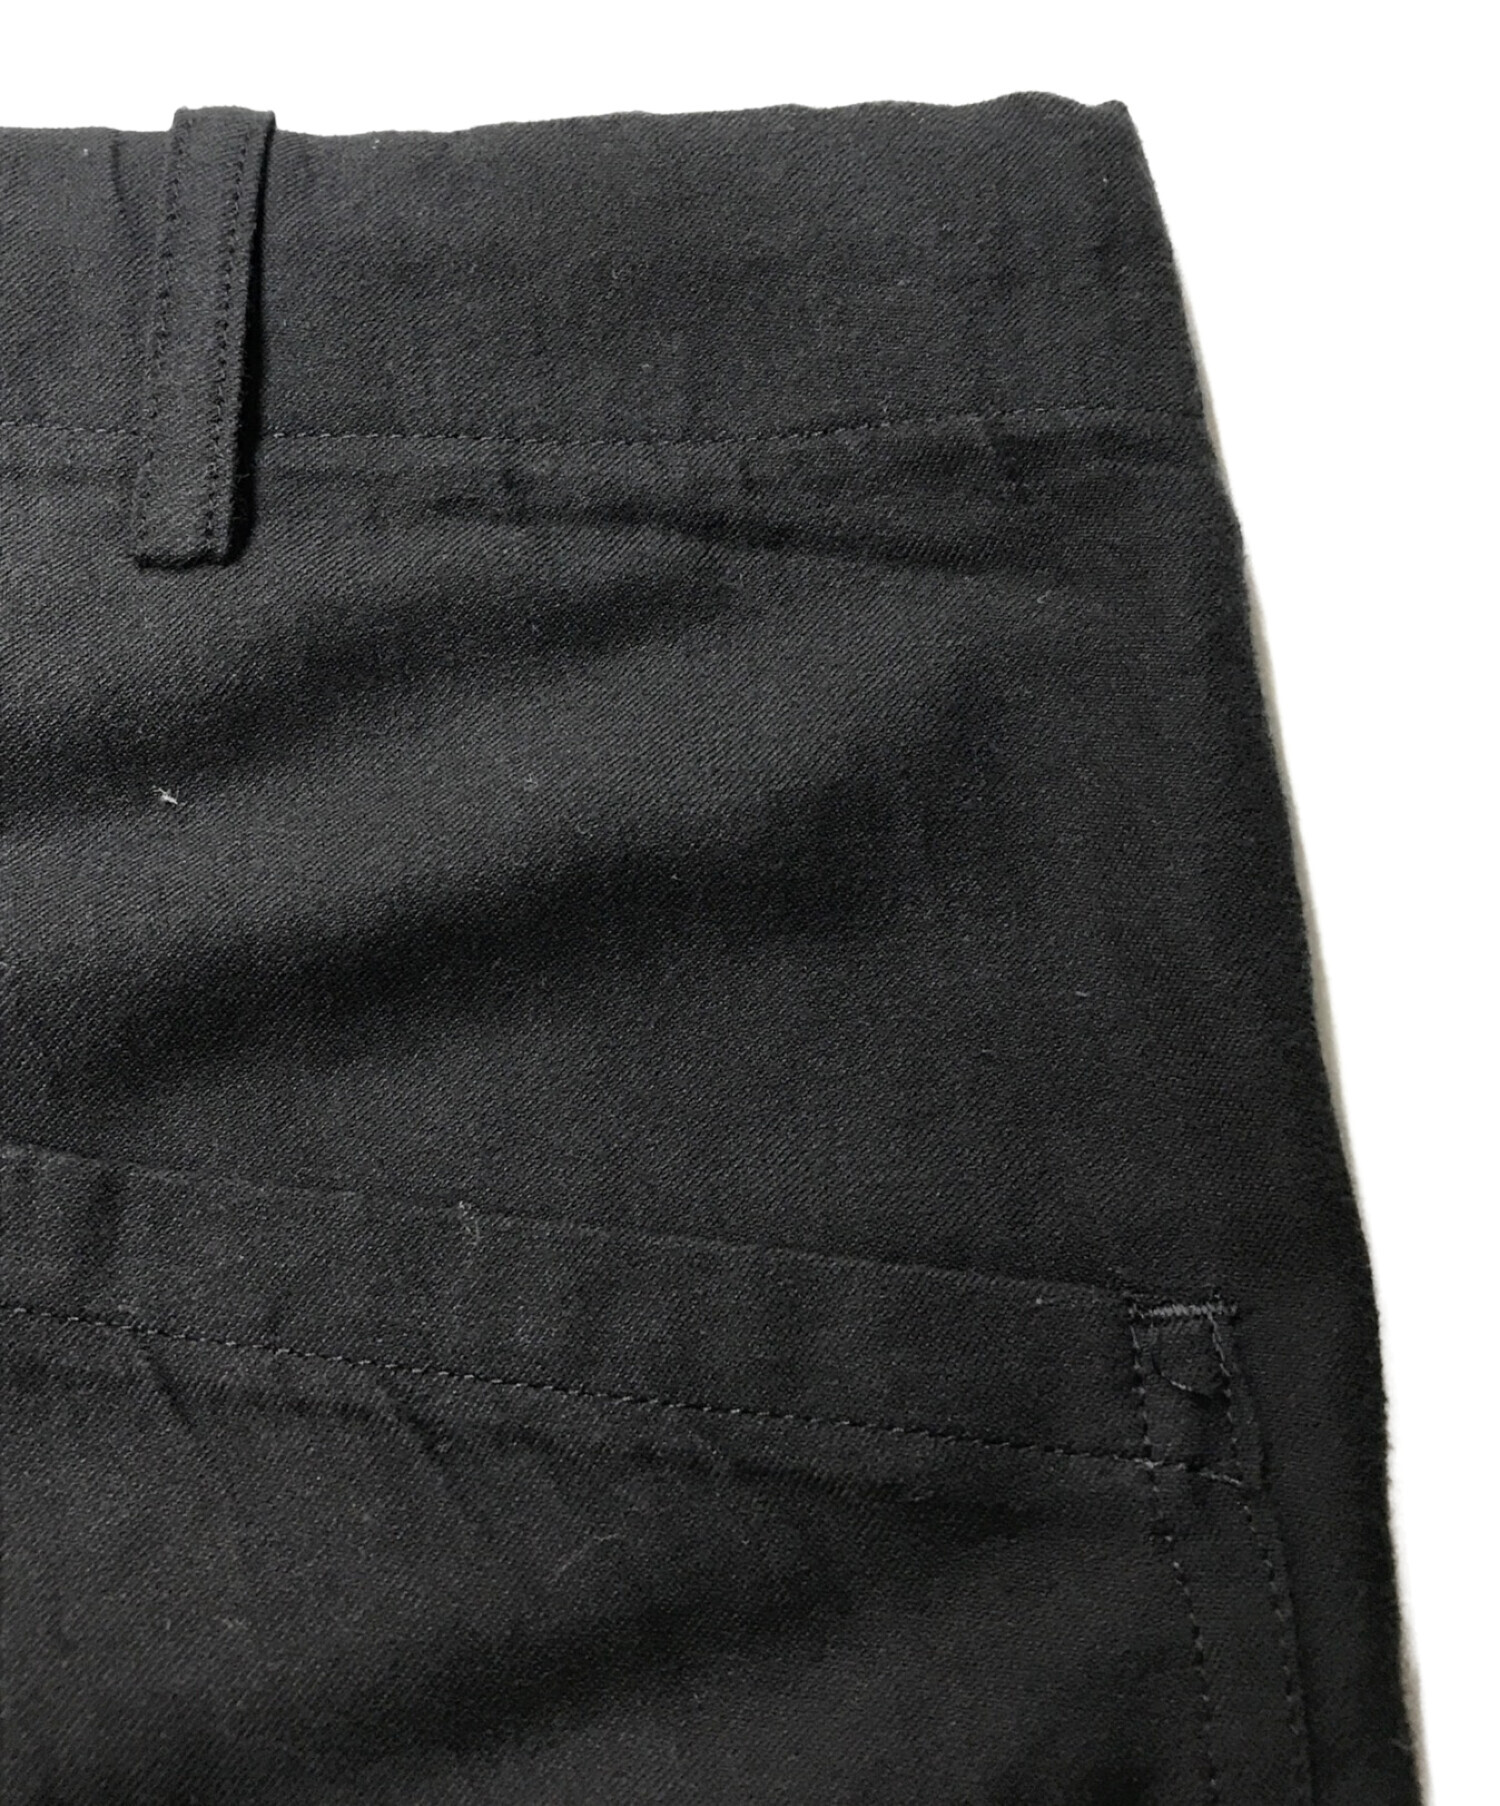 Yohji Yamamoto pour homme (ヨウジヤマモトプールオム) フロントポケットパンツ ブラック サイズ:3